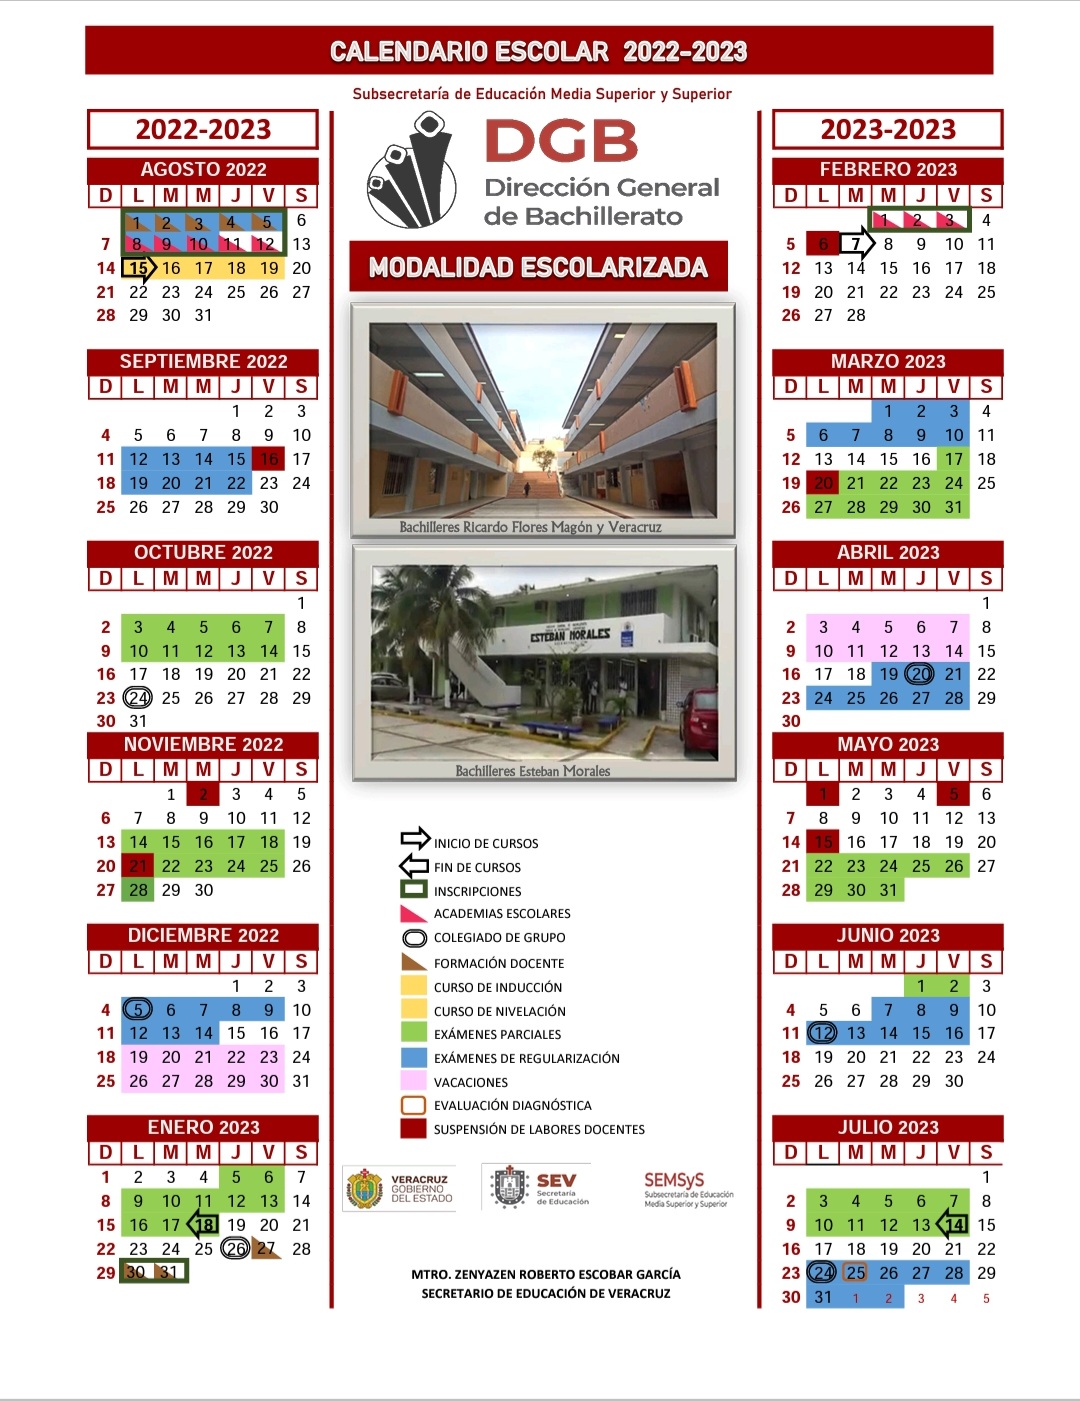 Colegio De Bachilleres De Chiapas Calendario Escolar vrogue.co